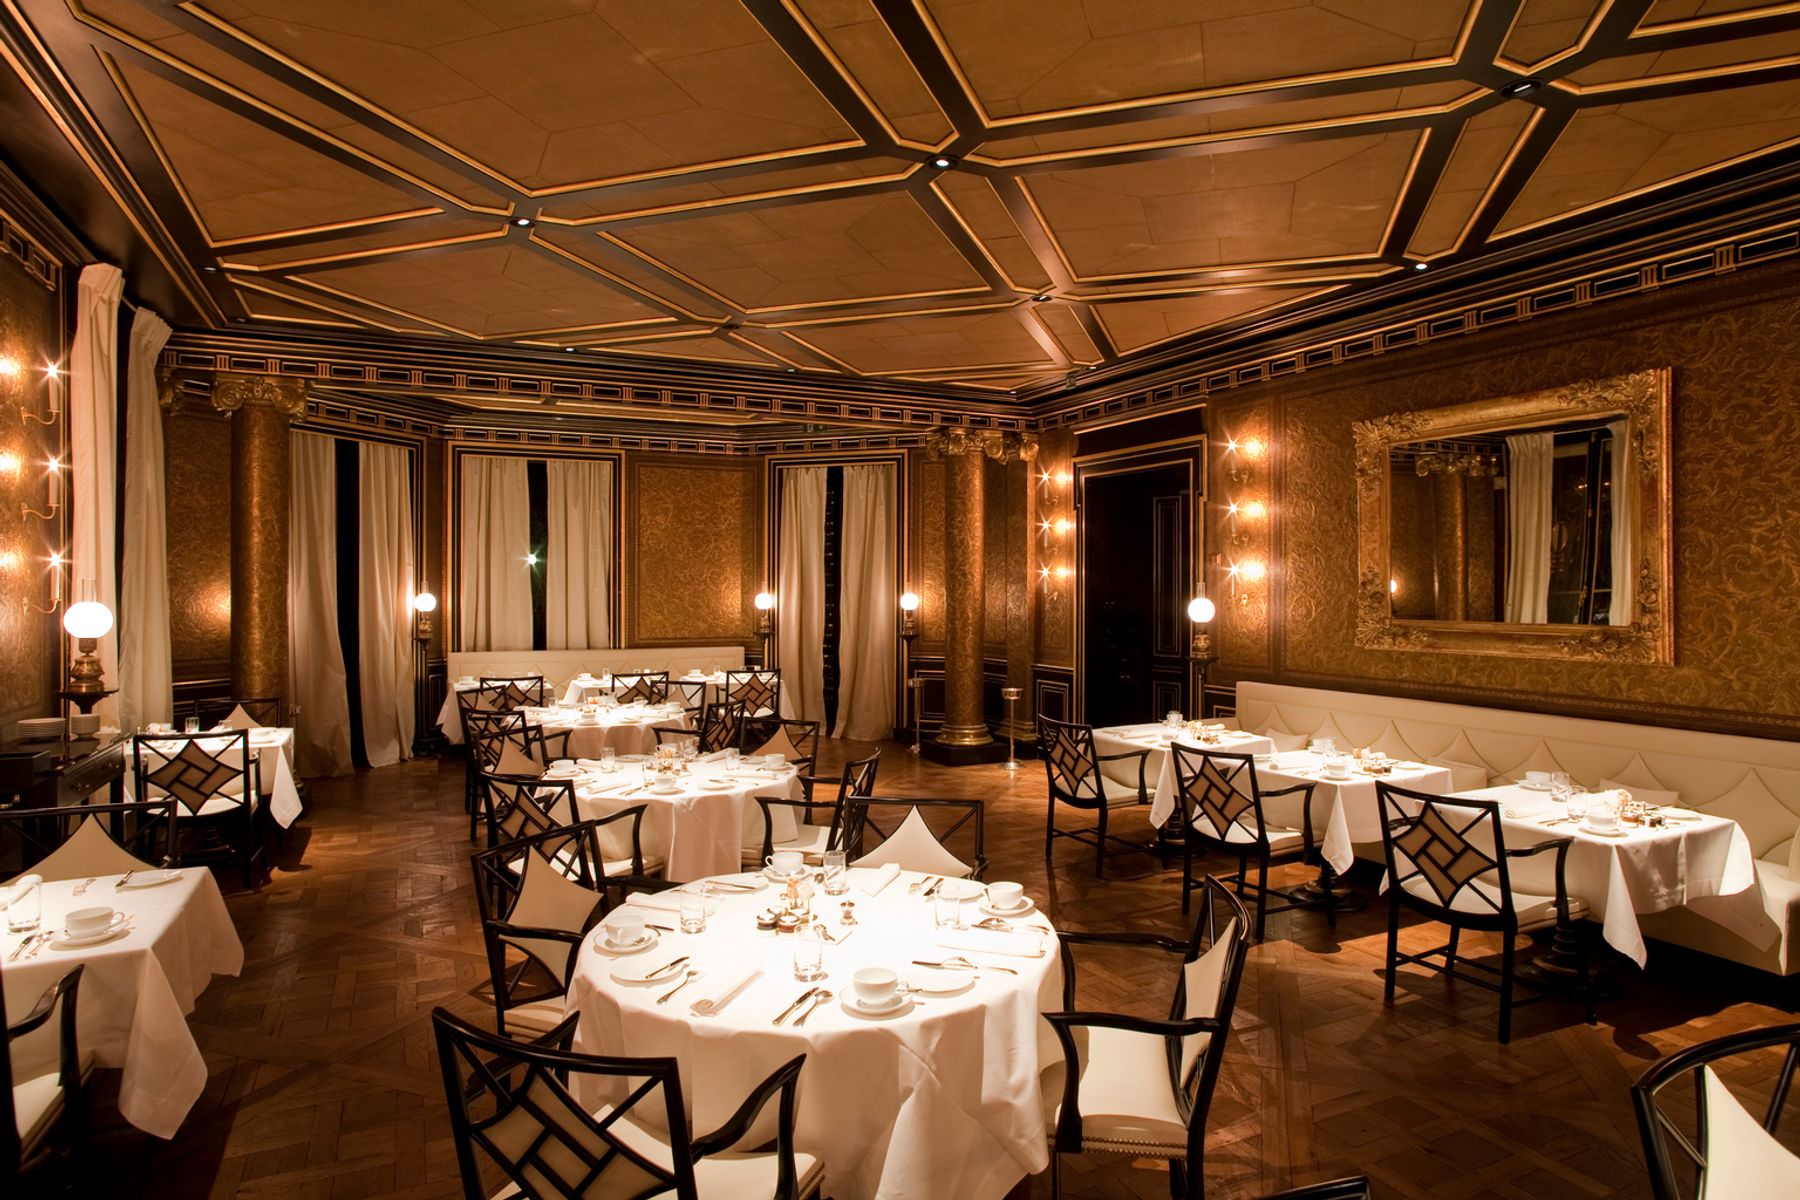 Restaurante Le Gabriel en el Hotel La Réserve, París. Fotografía: Edgar Zippel, Berlín.